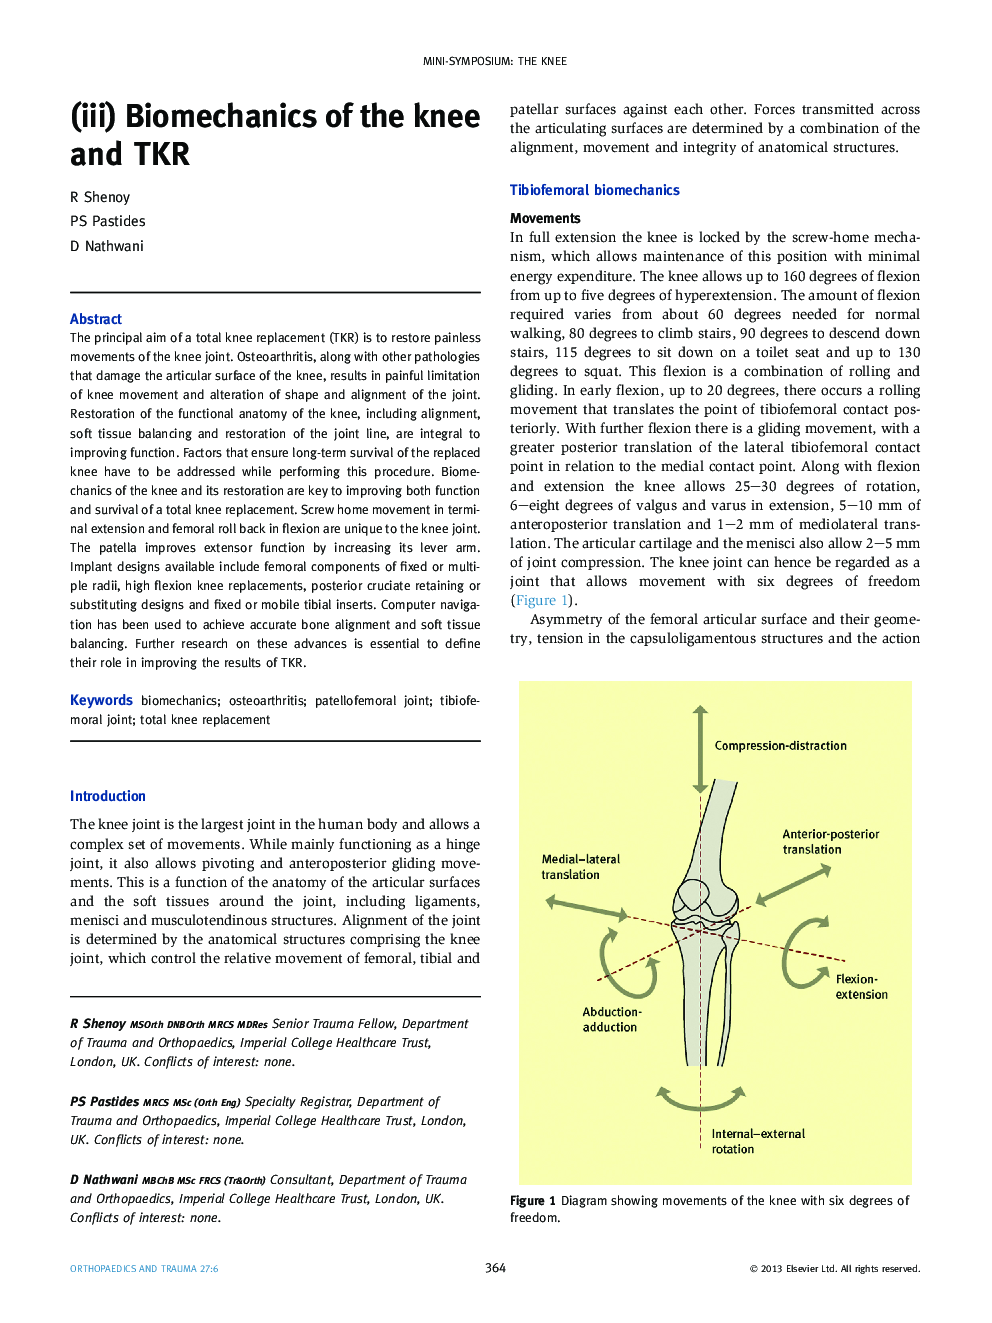 (iii) Biomechanics of the knee and TKR